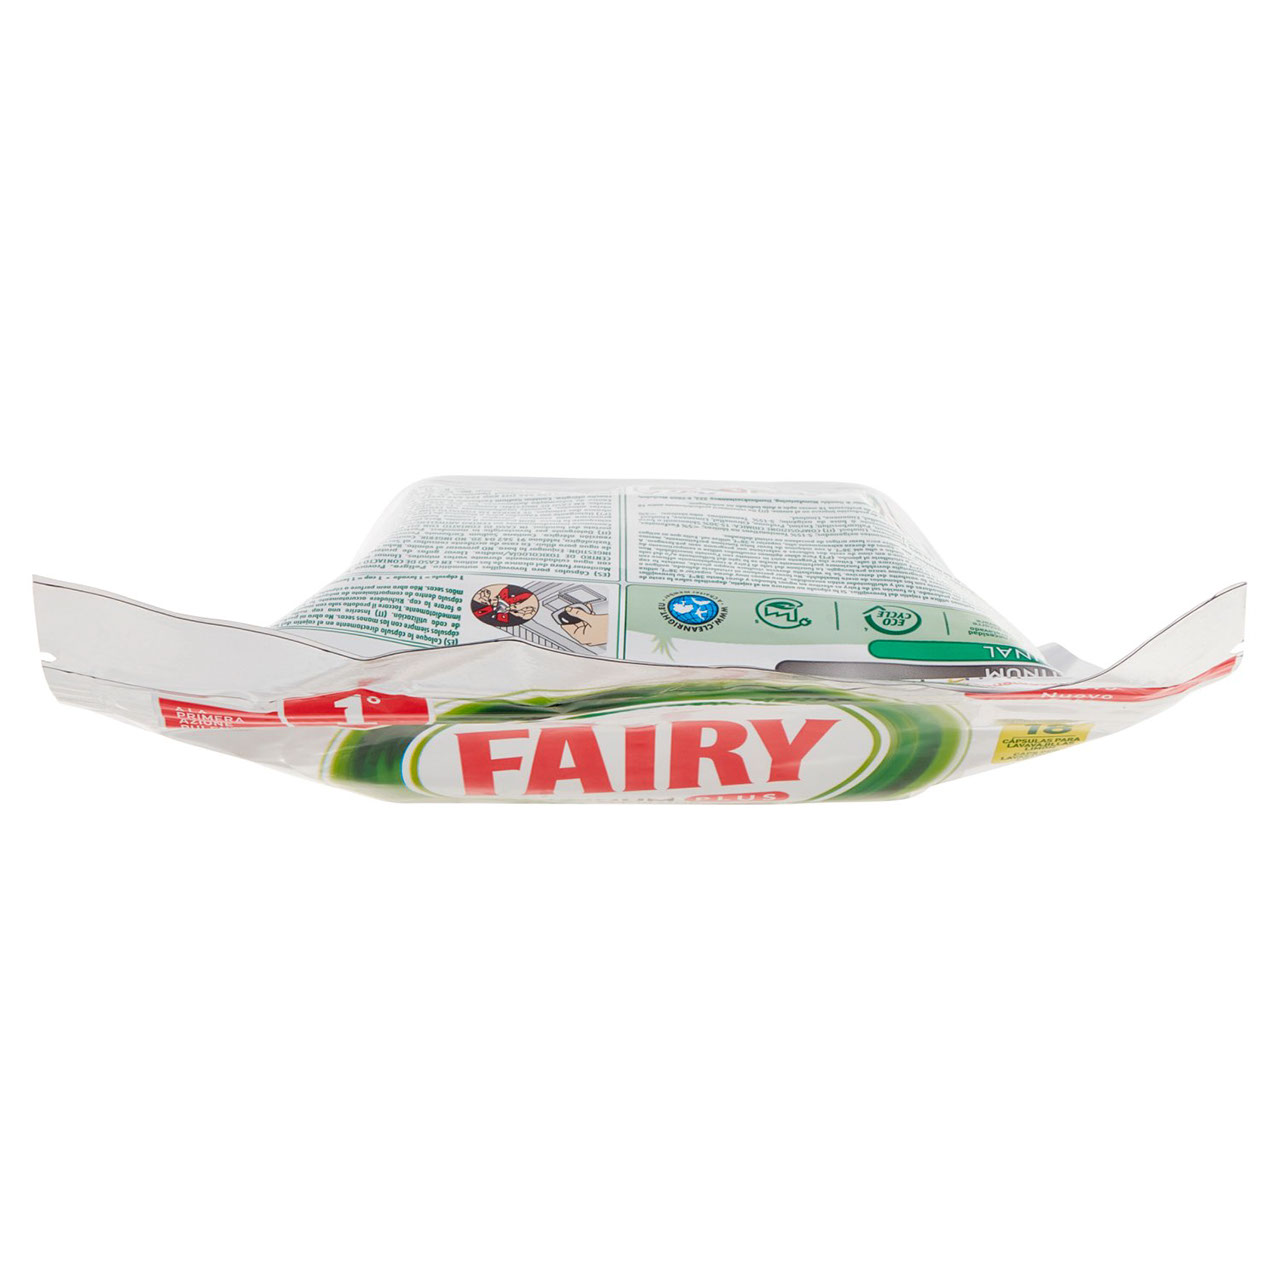 Fairy Platinum Plus Pastiglie Lavastoviglie 18 Caps, Detersivo Limone Anti-Opaco